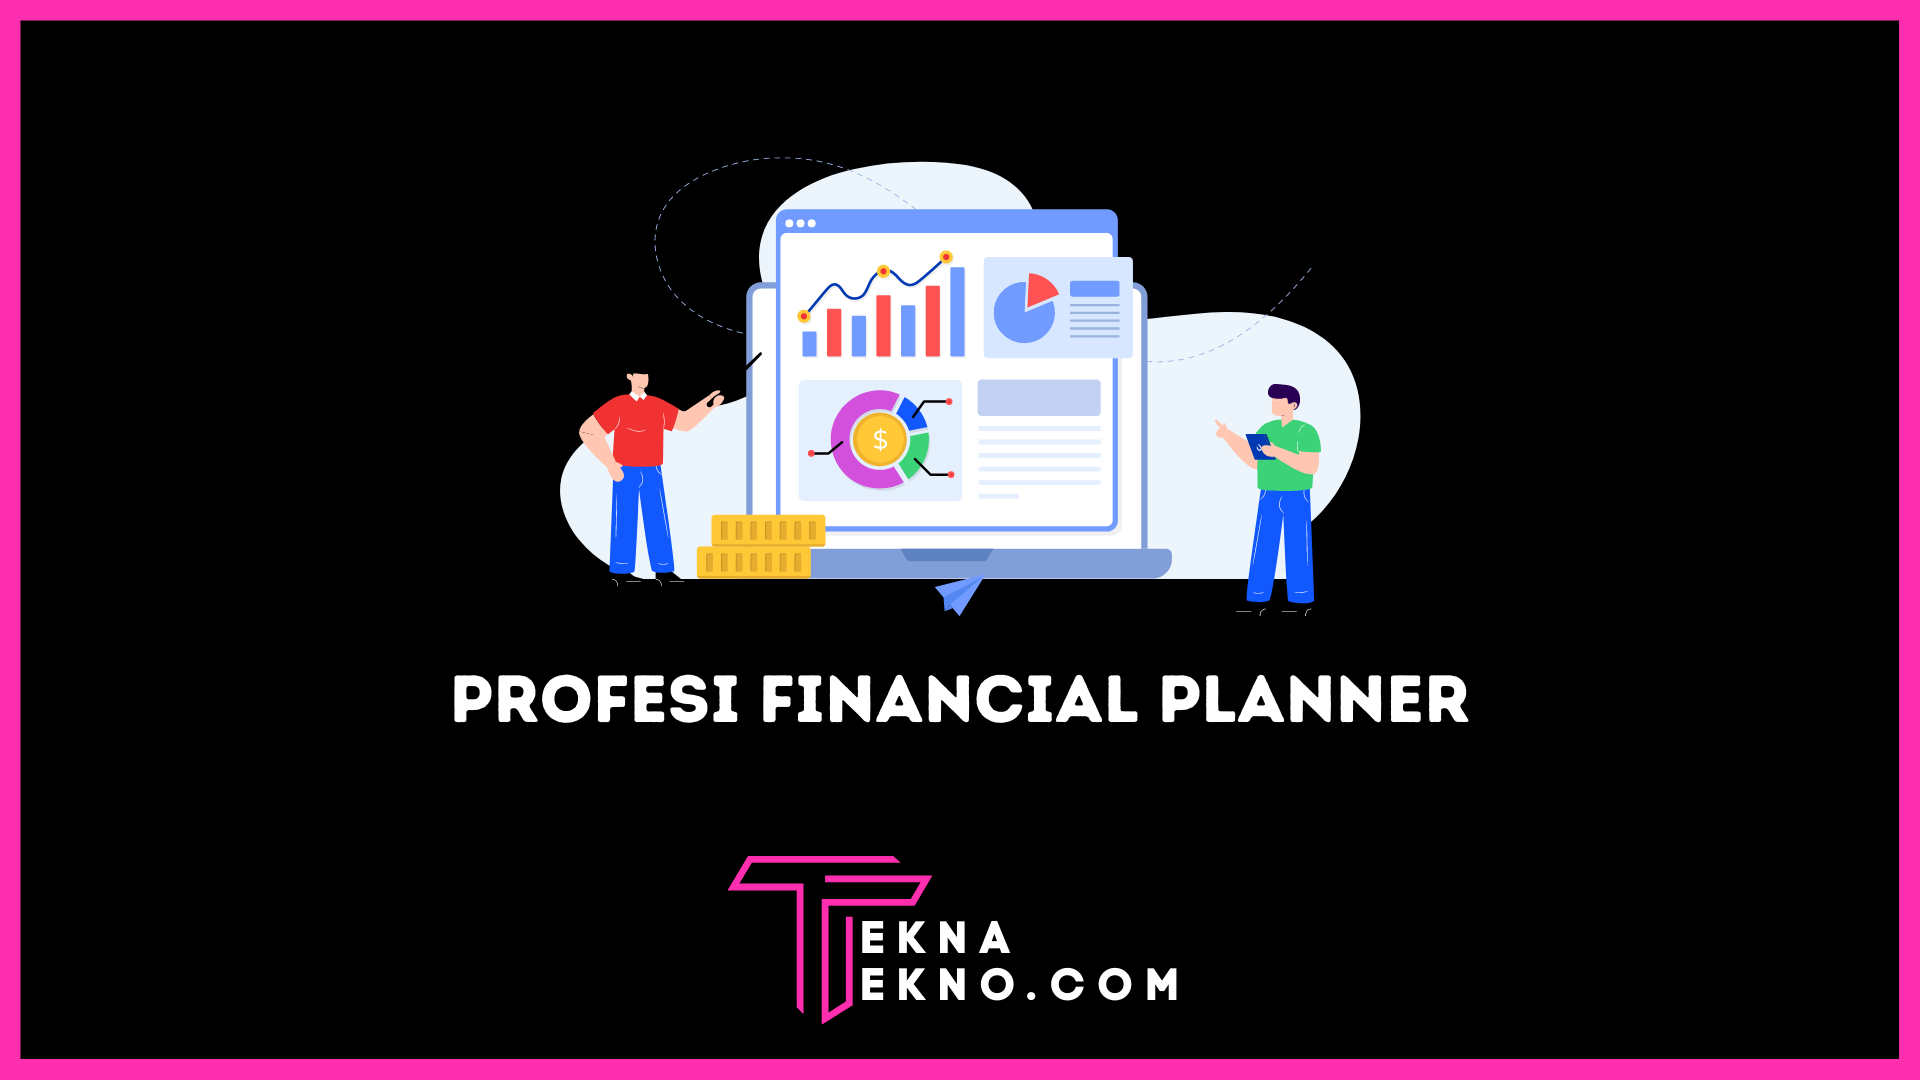 Profesi Financial Planner: Tugas dan Skill yang Dibutuhkan